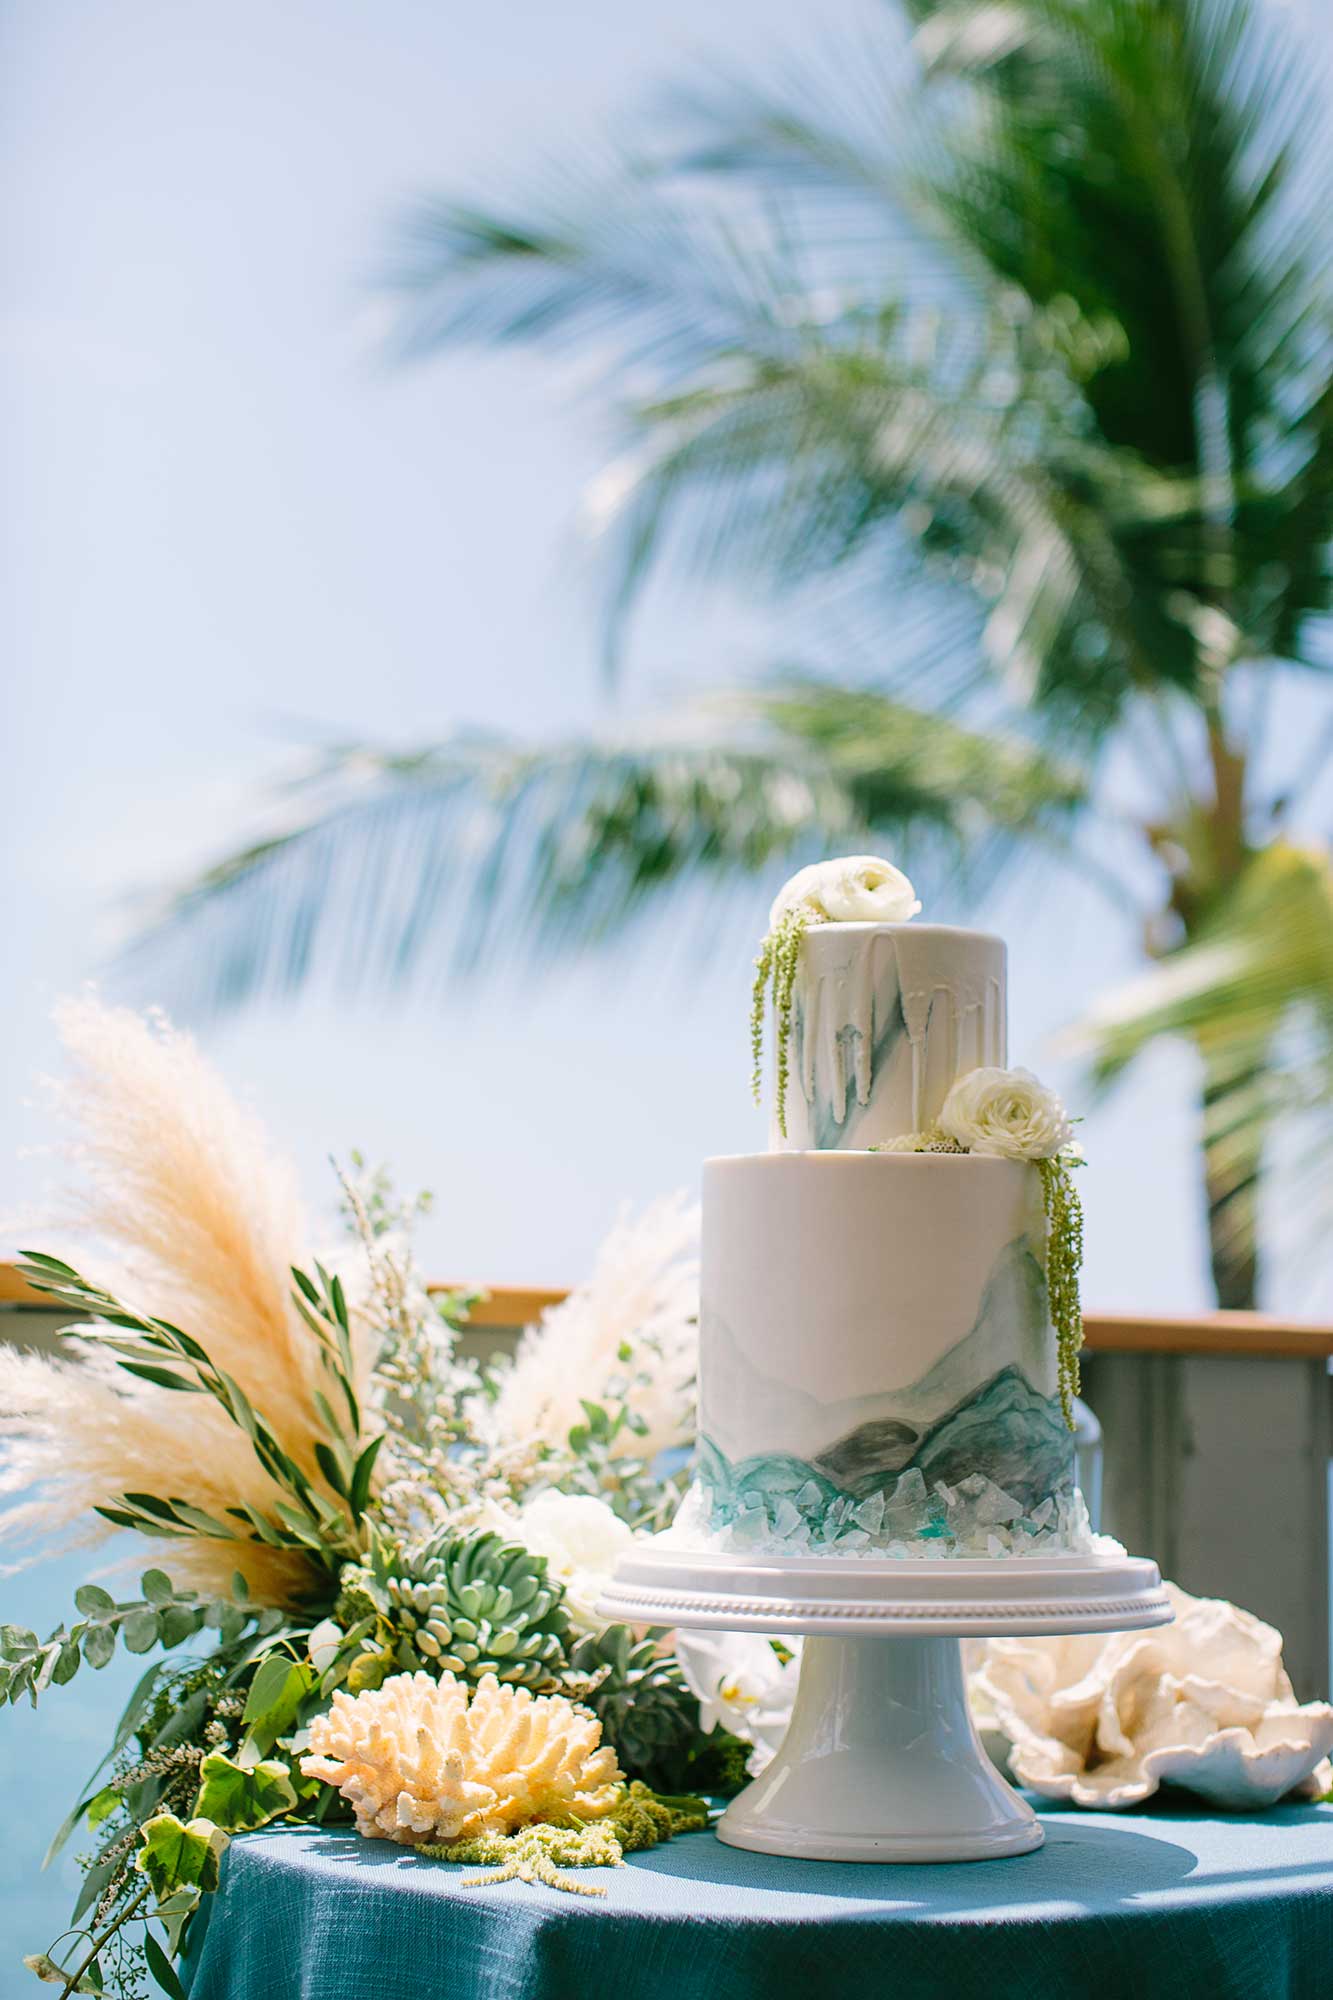 image of wedding cake